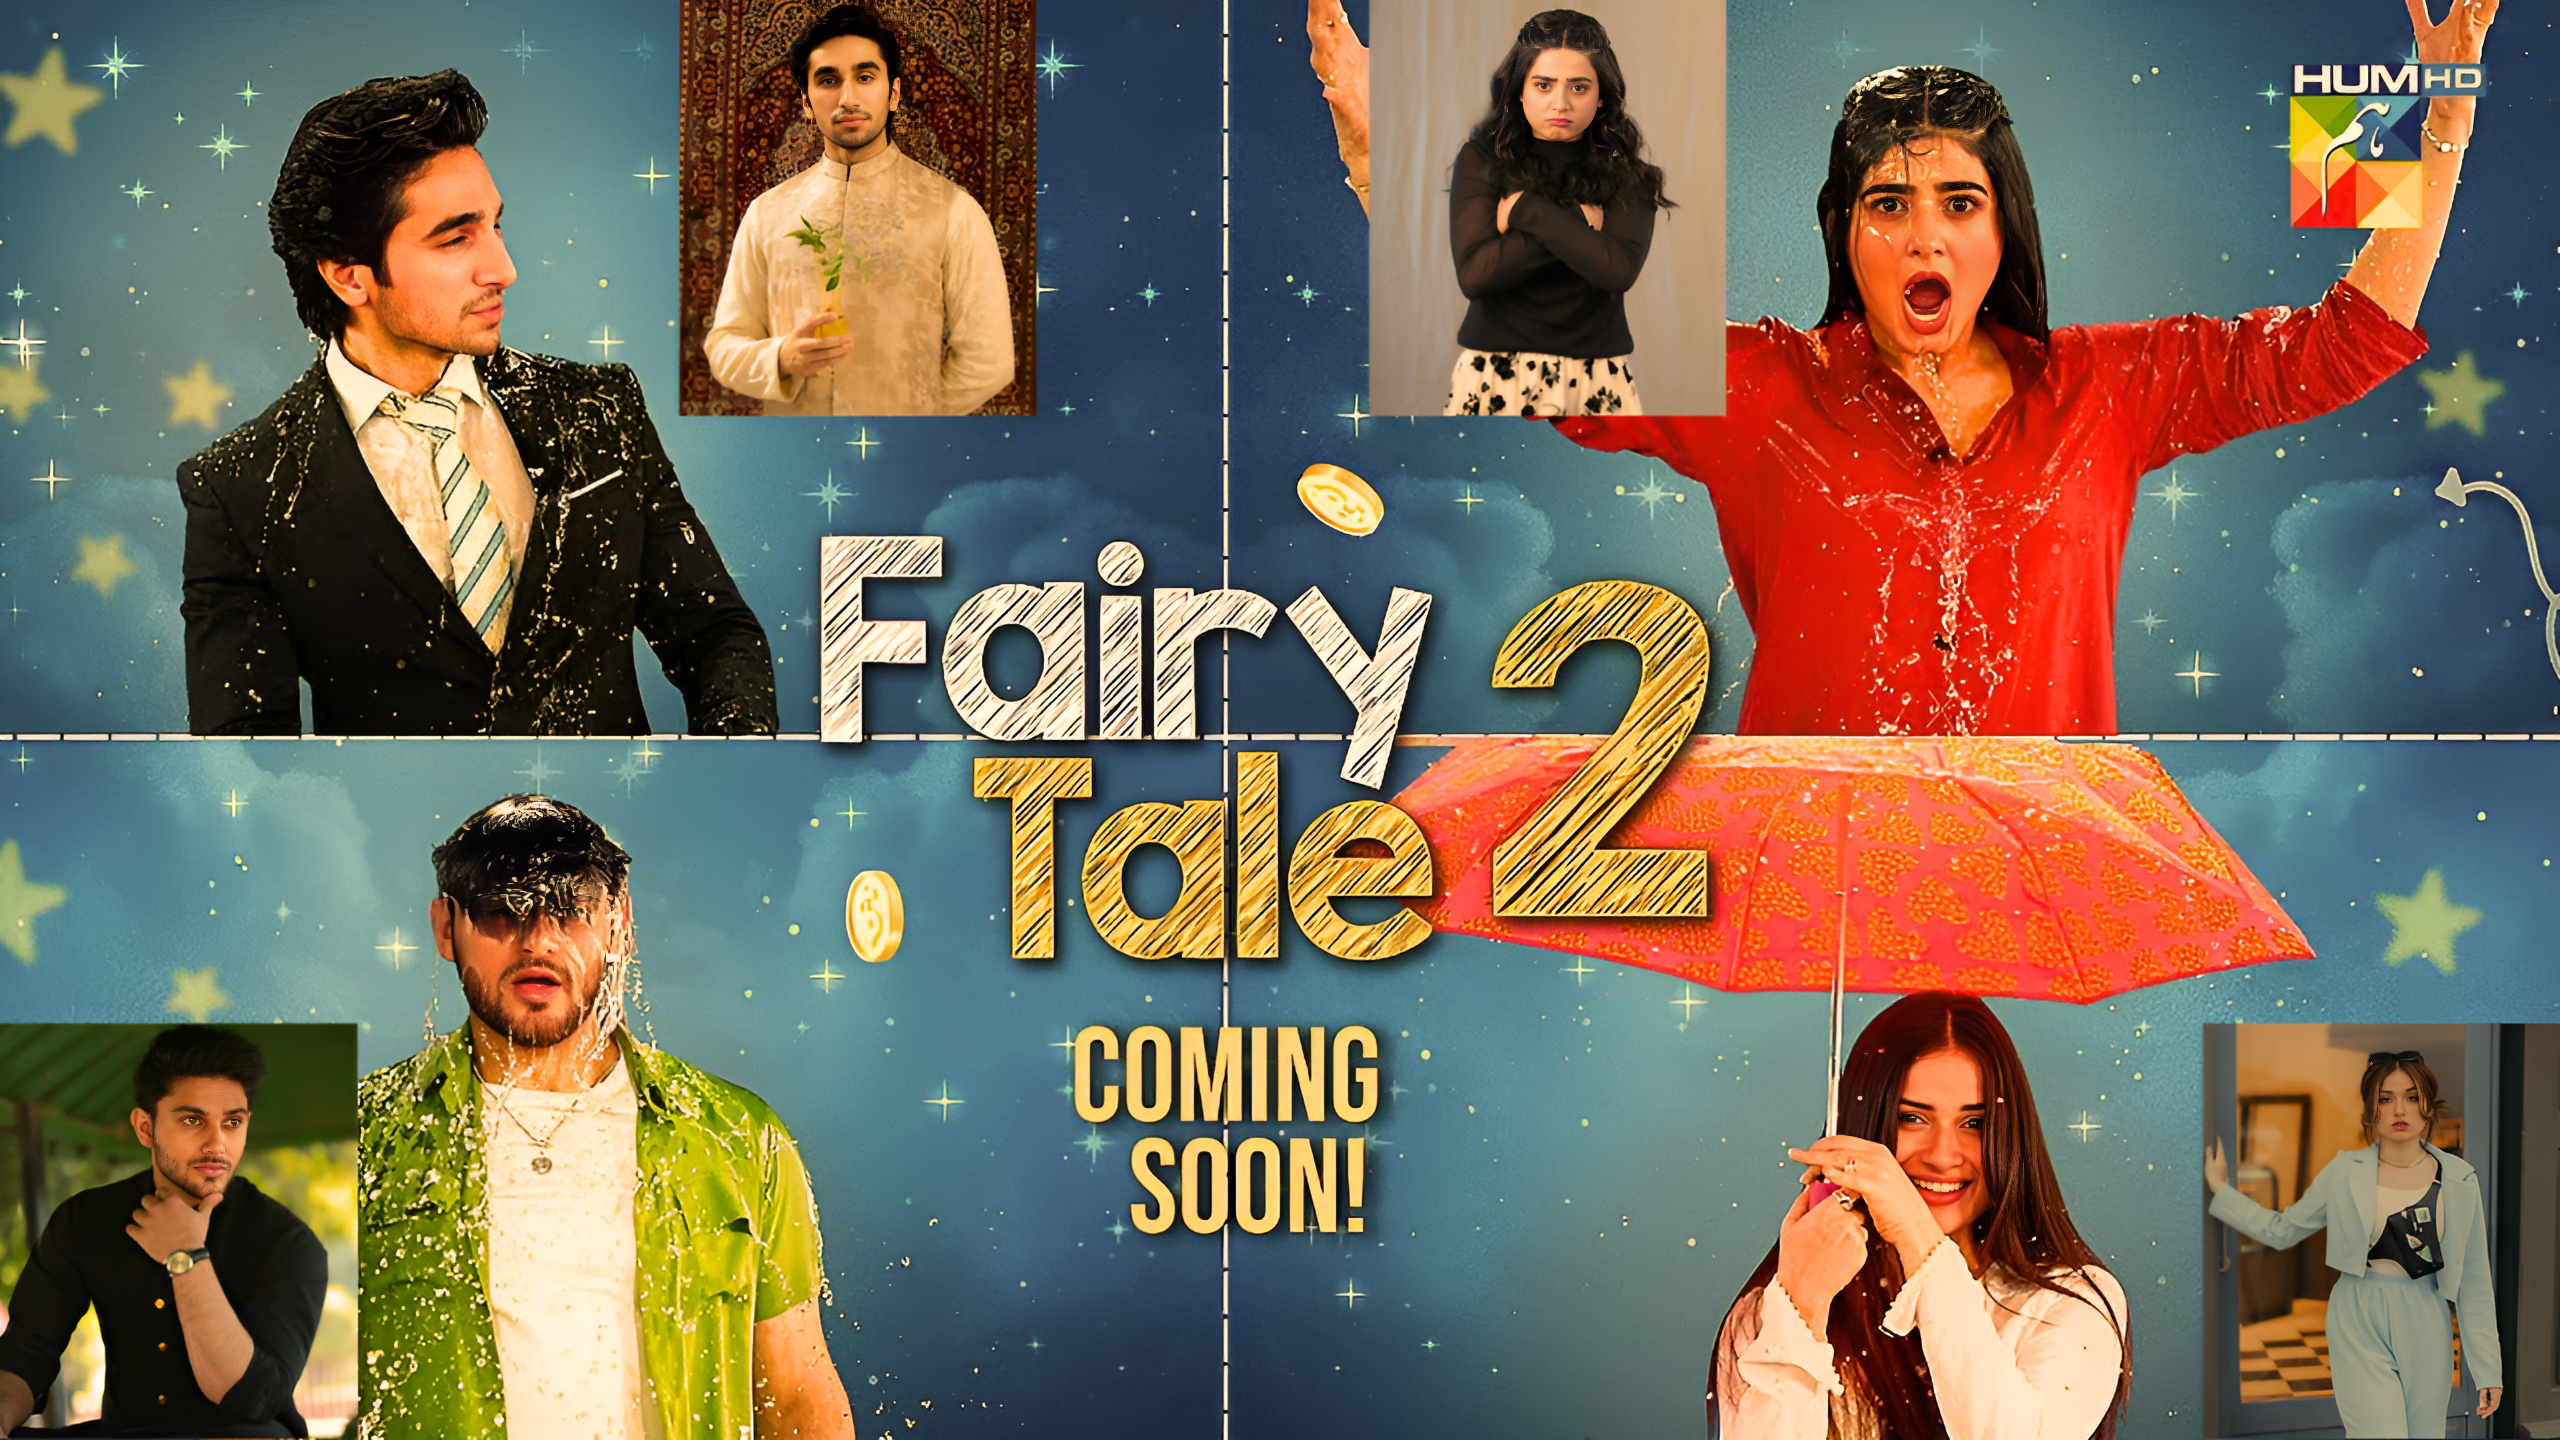 fairy tale drama season 2